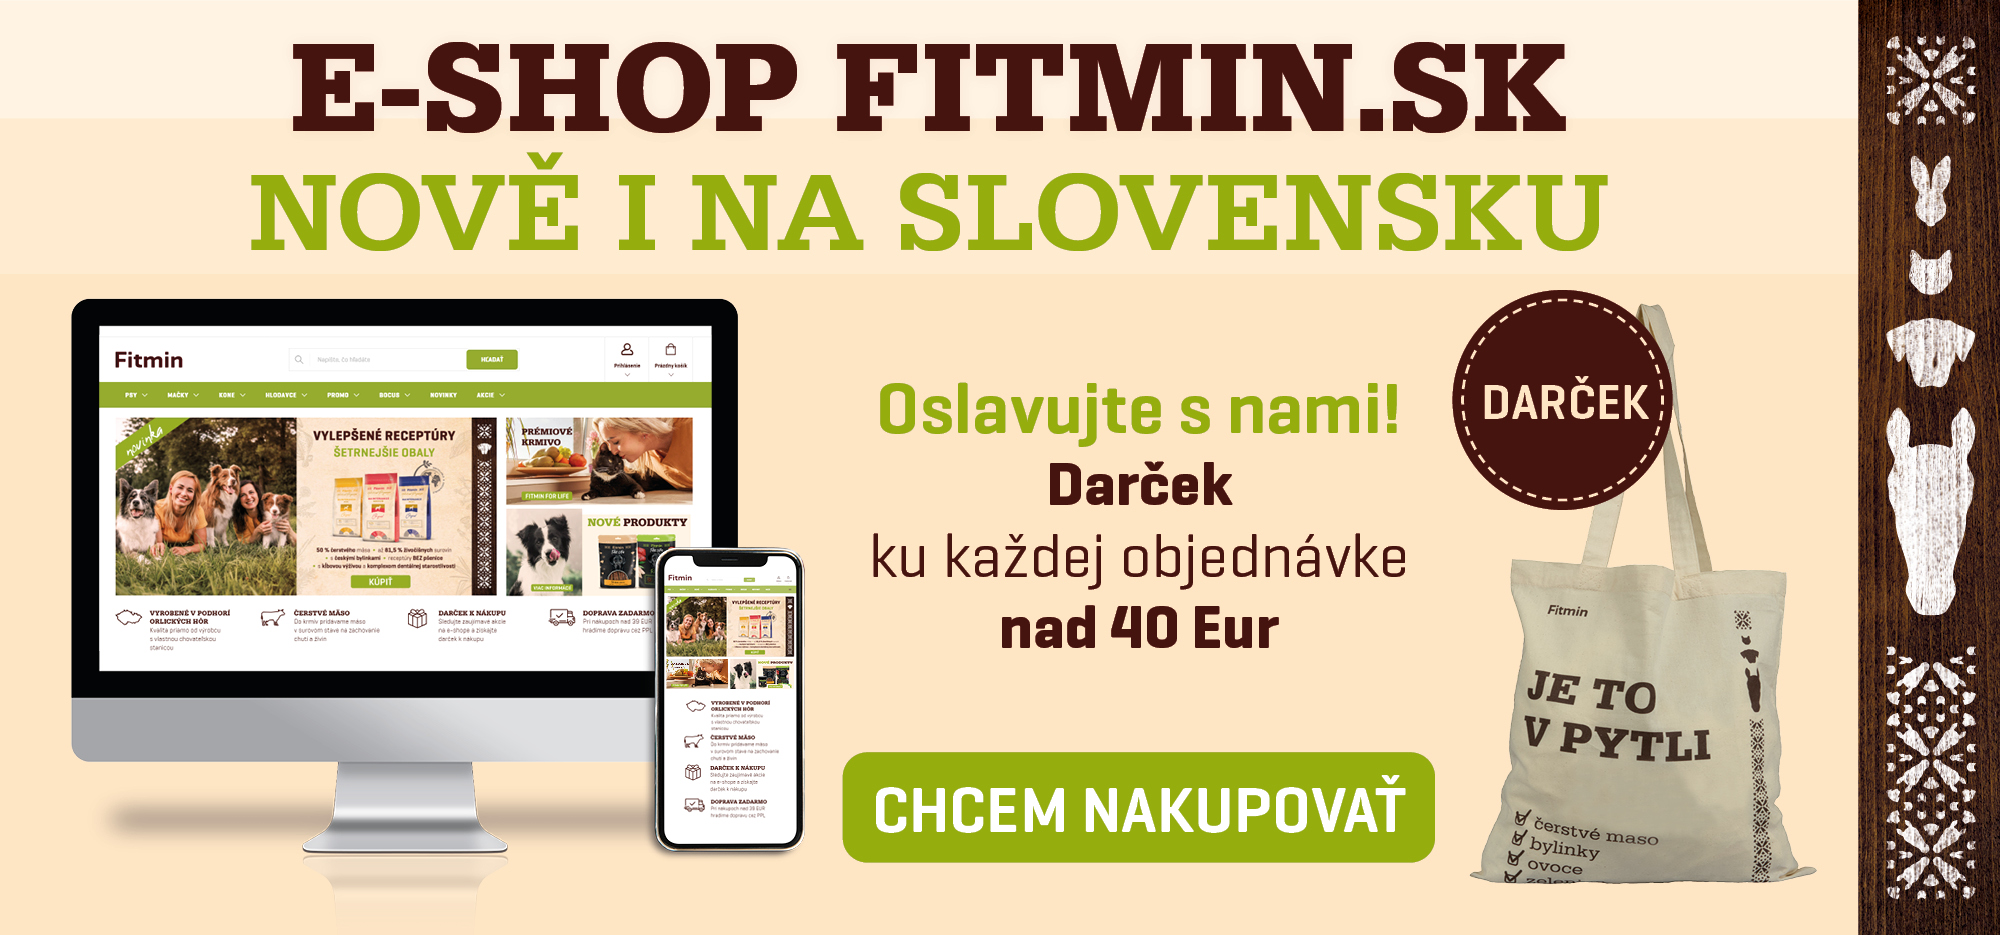 Nový e-shop fitmin.sk